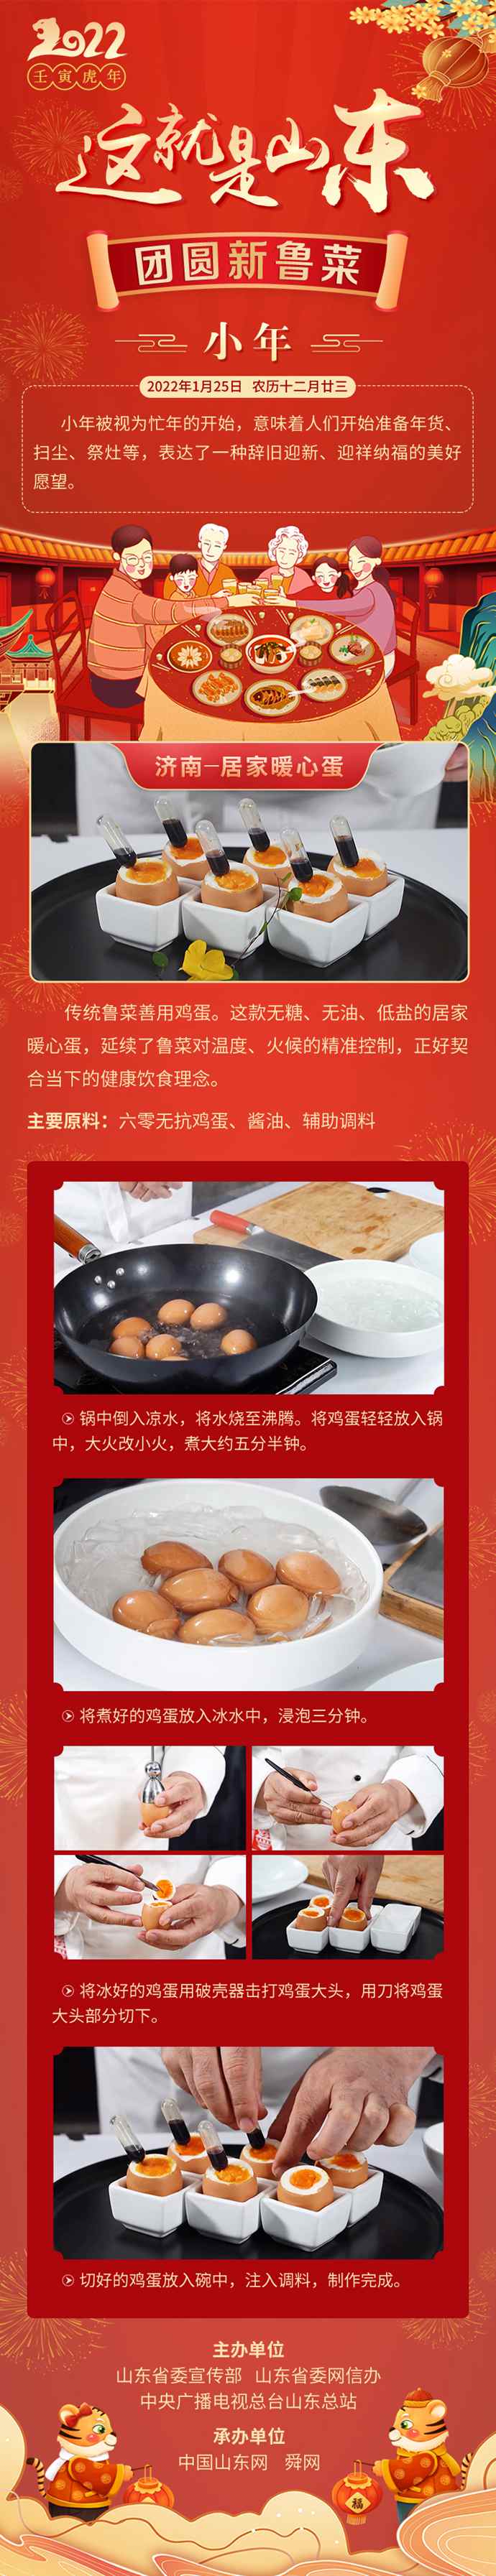 这就是山东·团圆新鲁菜——济南-居家暖心蛋